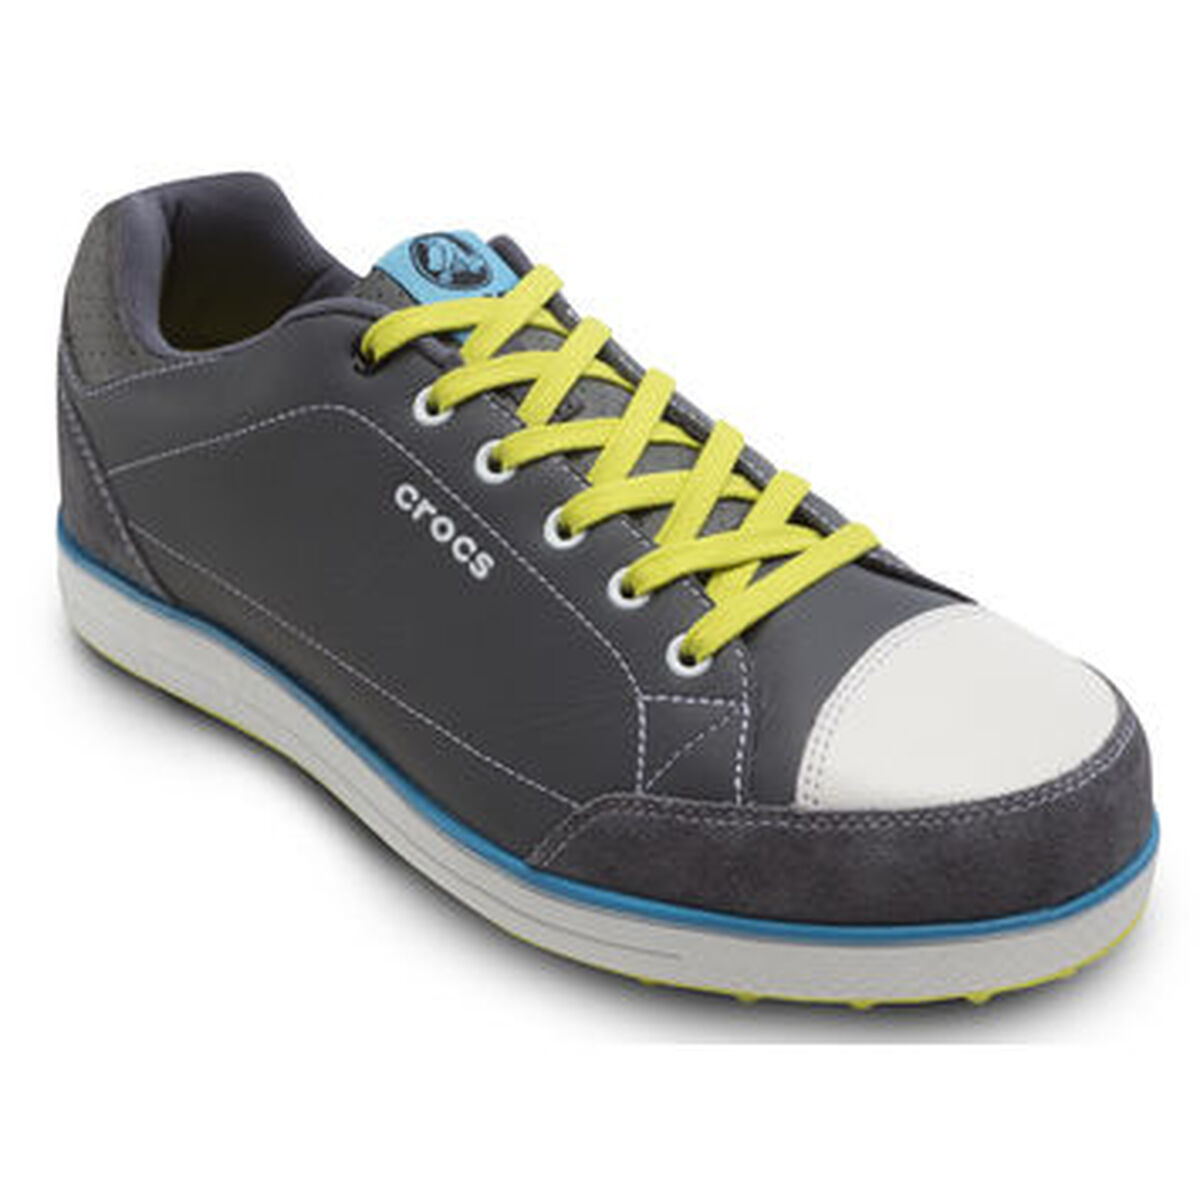 Crocs Karlson Men's Golf Shoes: Shop Crocs Men's Golf Shoes | PGA TOUR ...